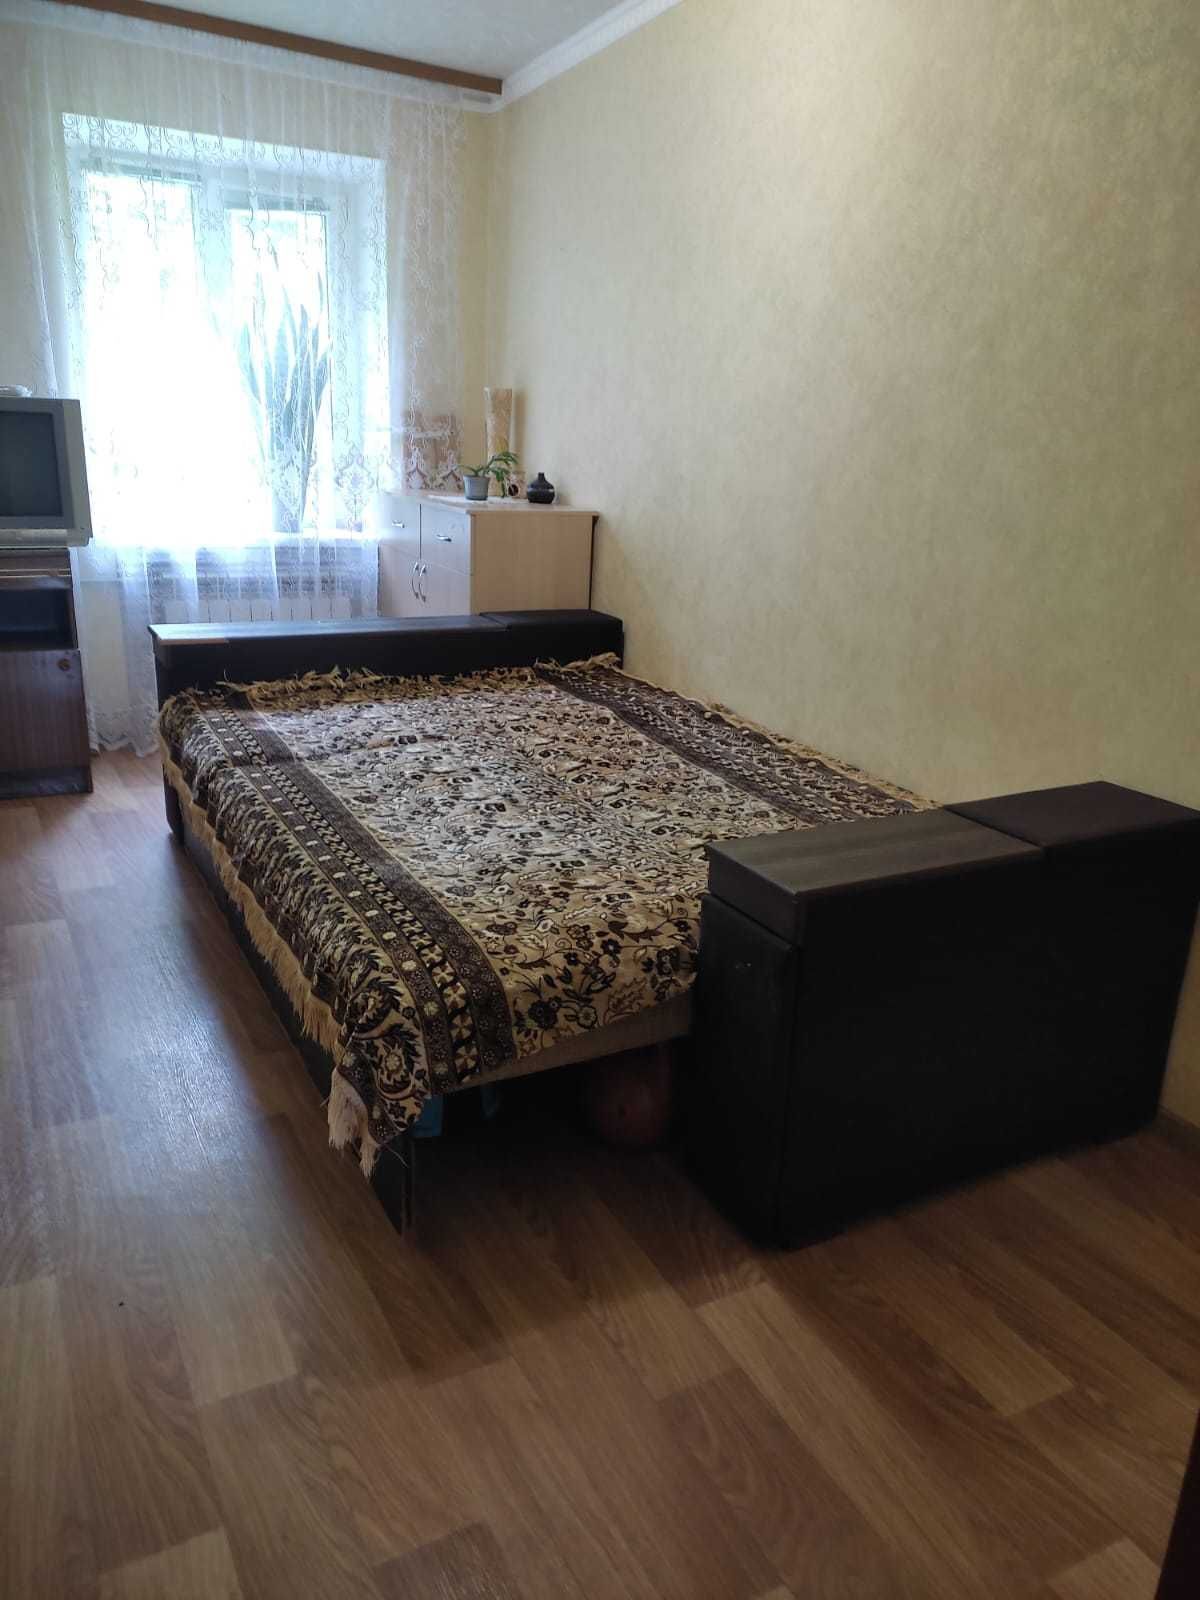 Аренда 3к квартиры на Одесской